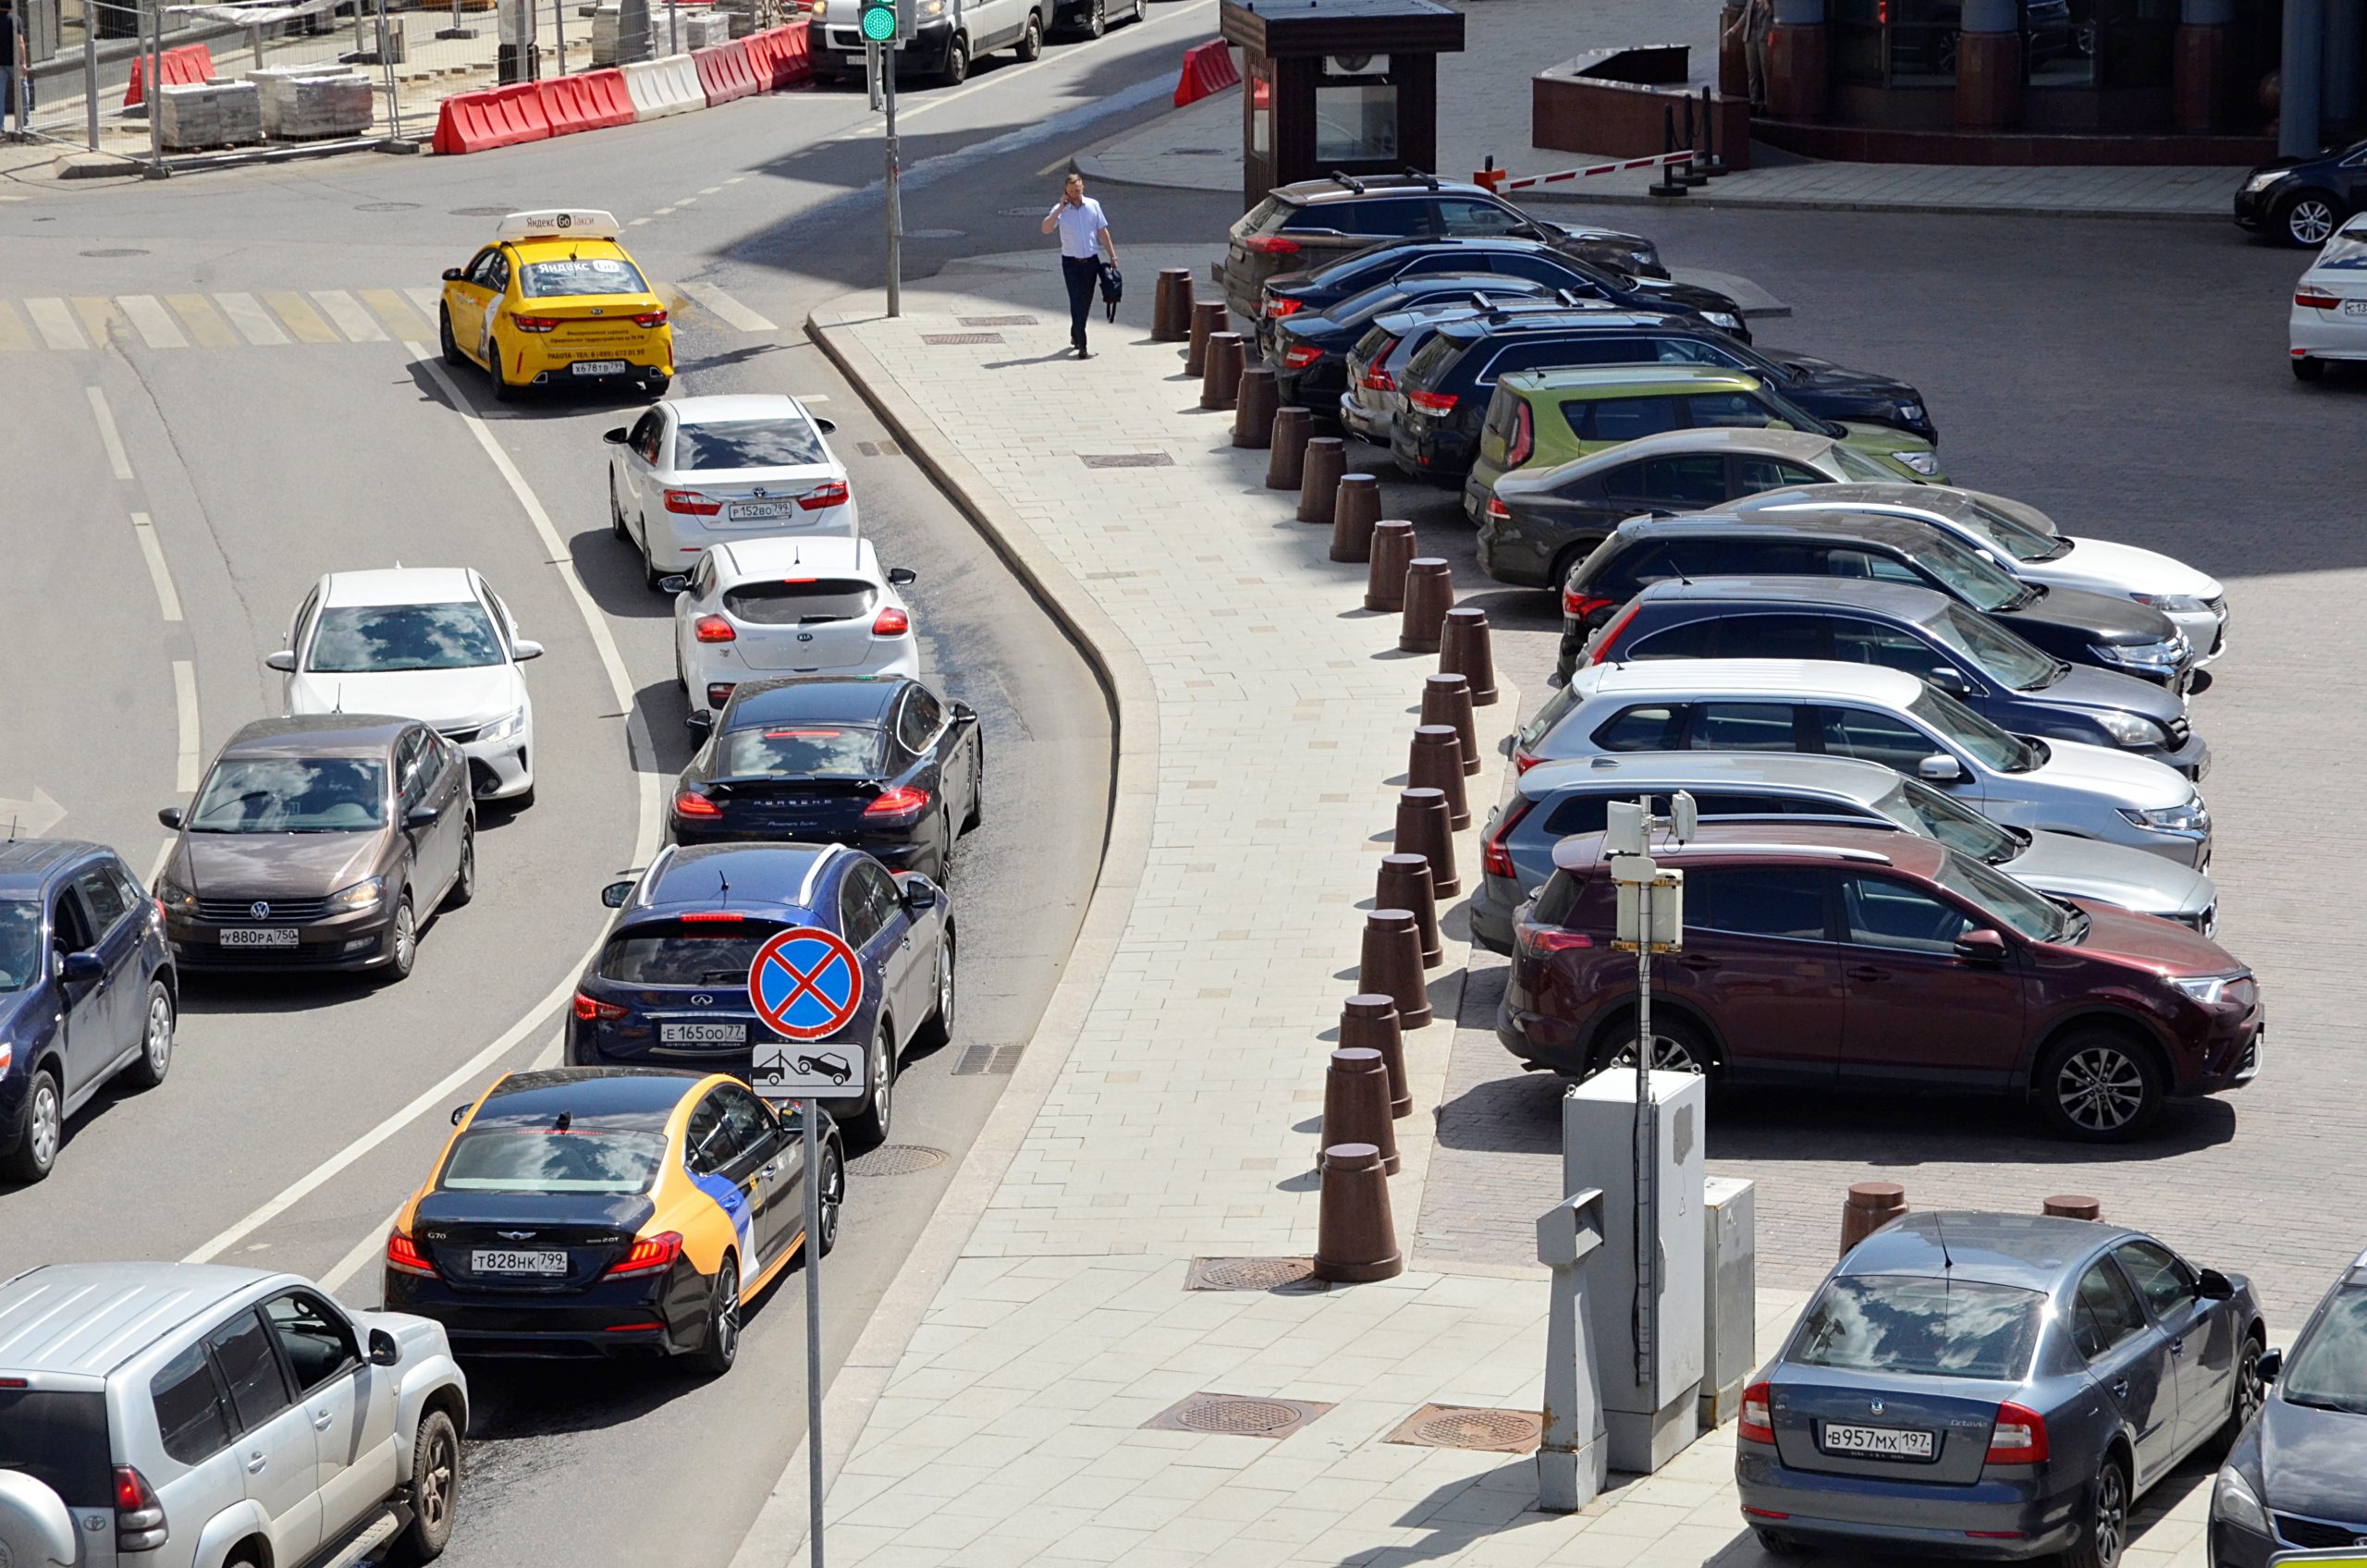 Бесплатная парковка на 150 мест появилась в Чертанове Северном